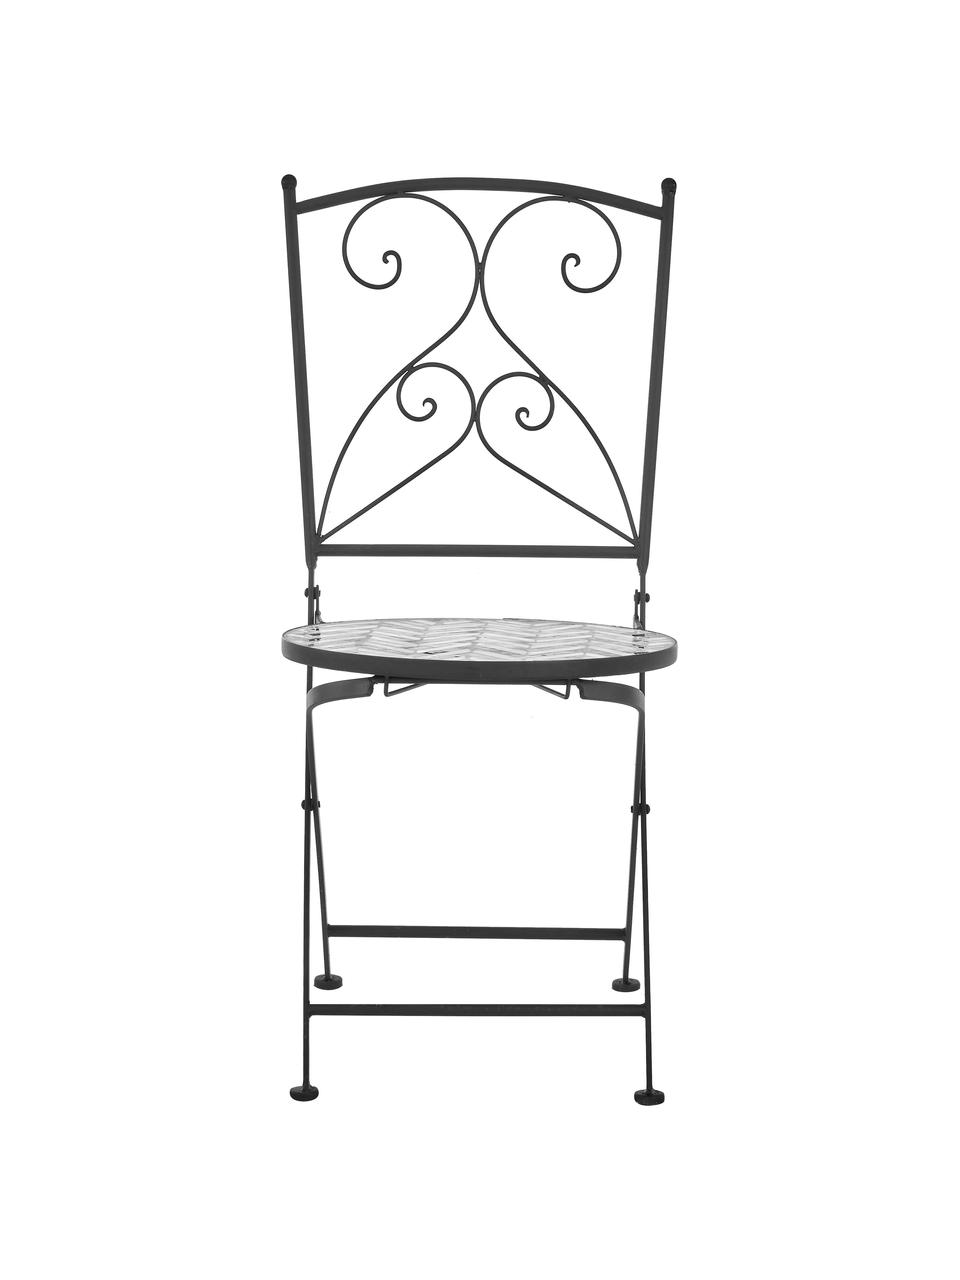 Balkonstühle Verano mit Mosaik, 2 Stück, Gestell: Metall, pulverbeschichtet, Sitzfläche: Steinmosaik, Grau, Weiss, Schwarz, B 40 x T 52 cm